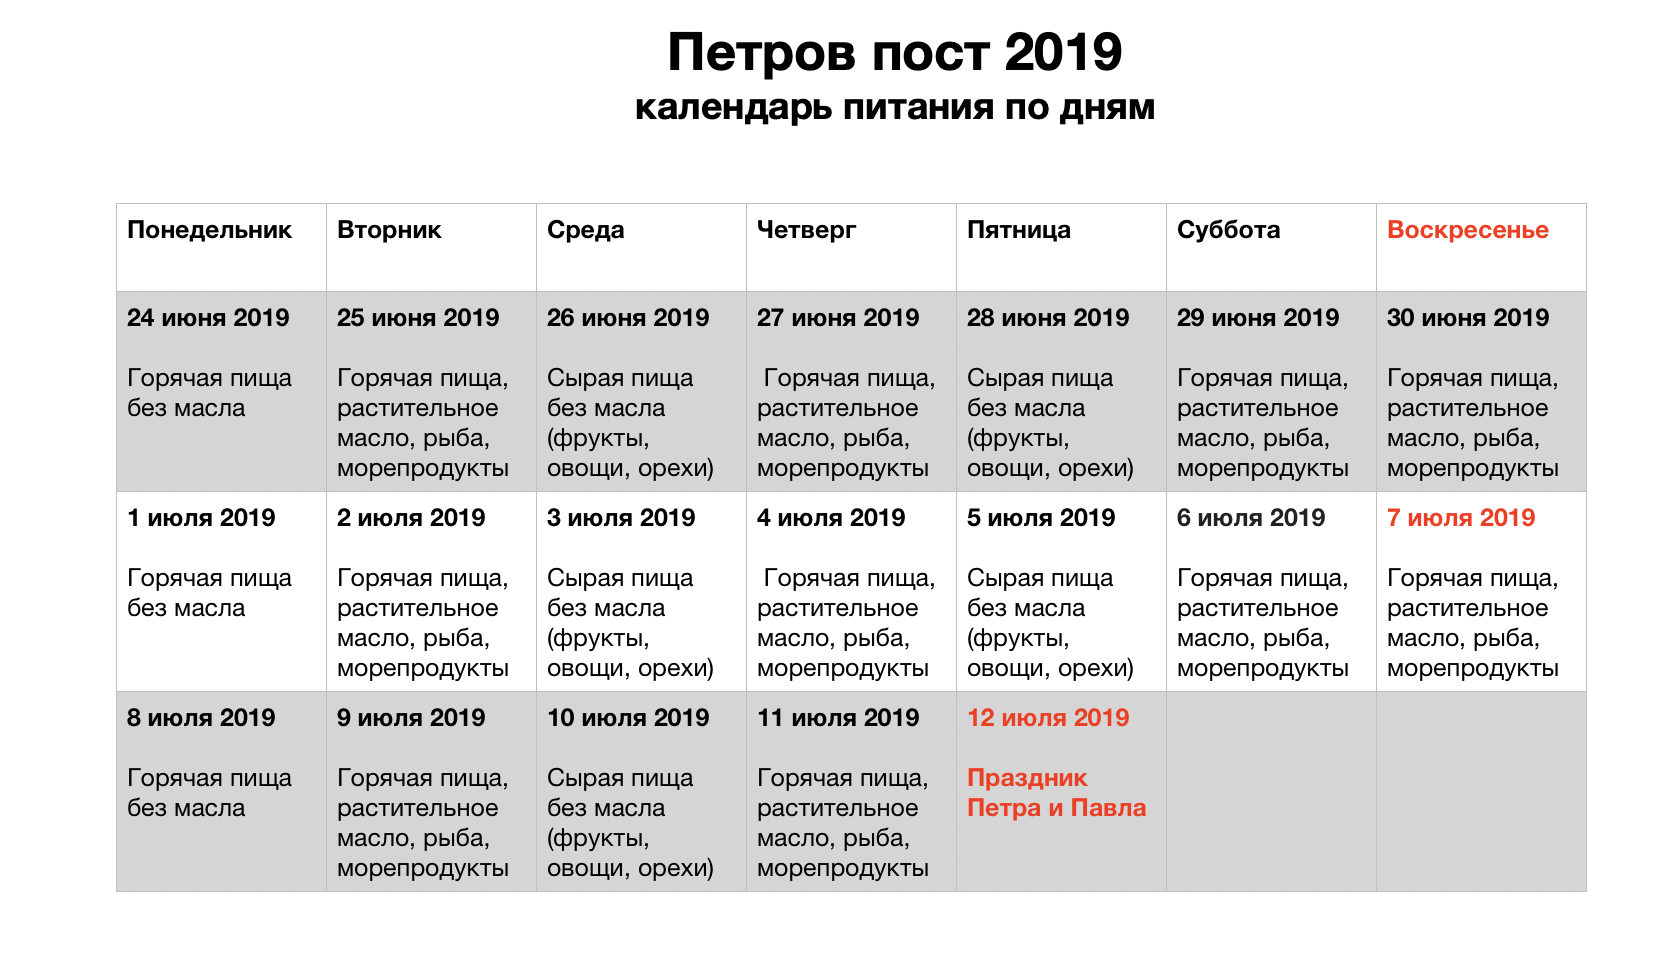 Новые случаи по дням. Питание в Петровский пост 2021 году по дням. Петровский пост в 2022 году питание по дням.